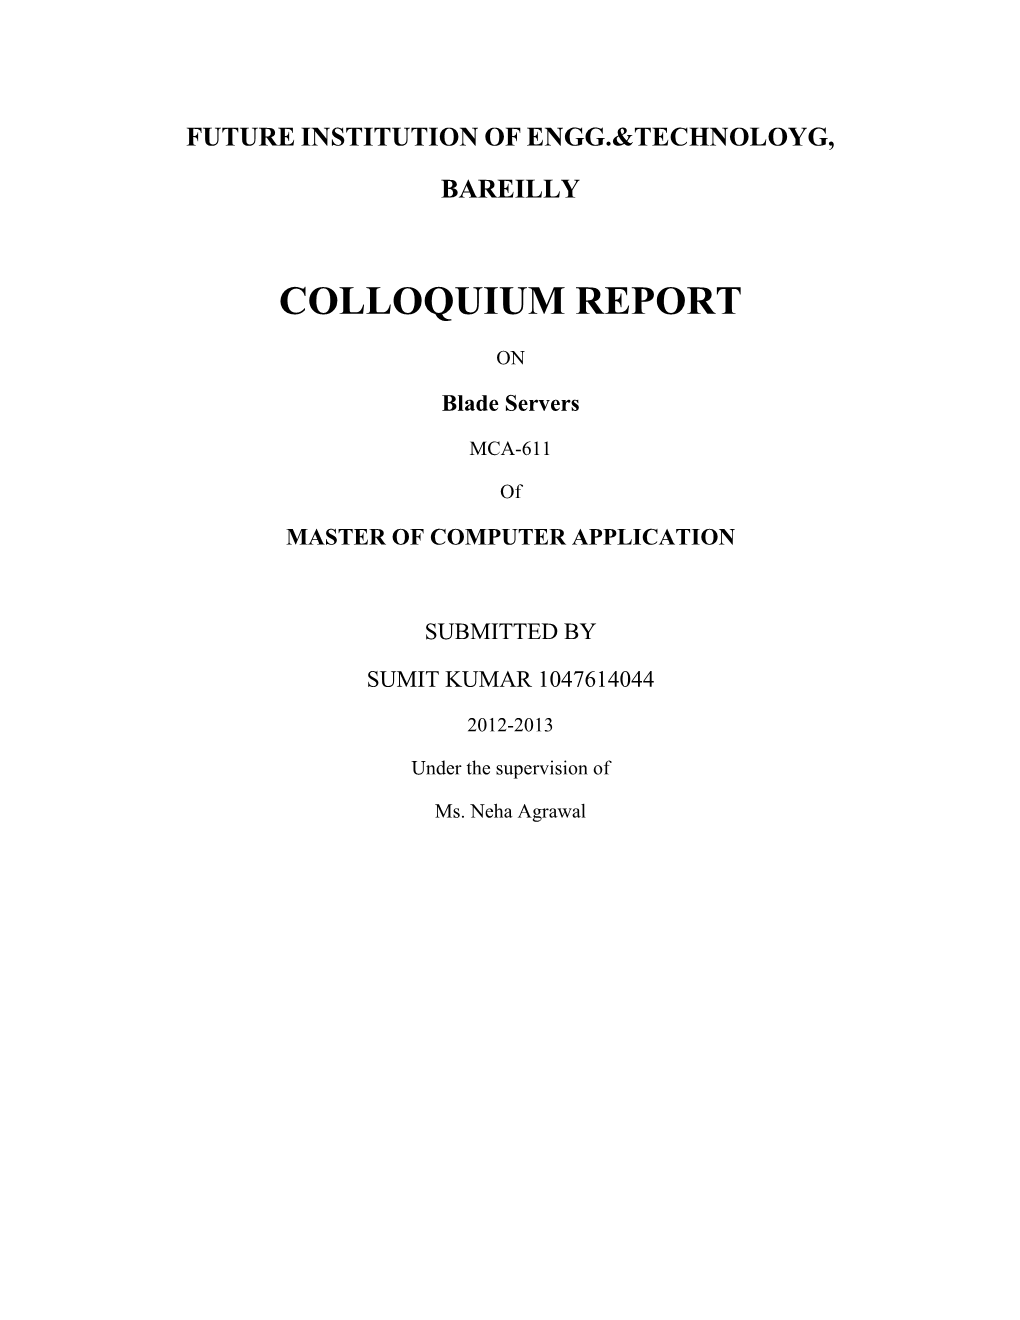 Colloquium Report